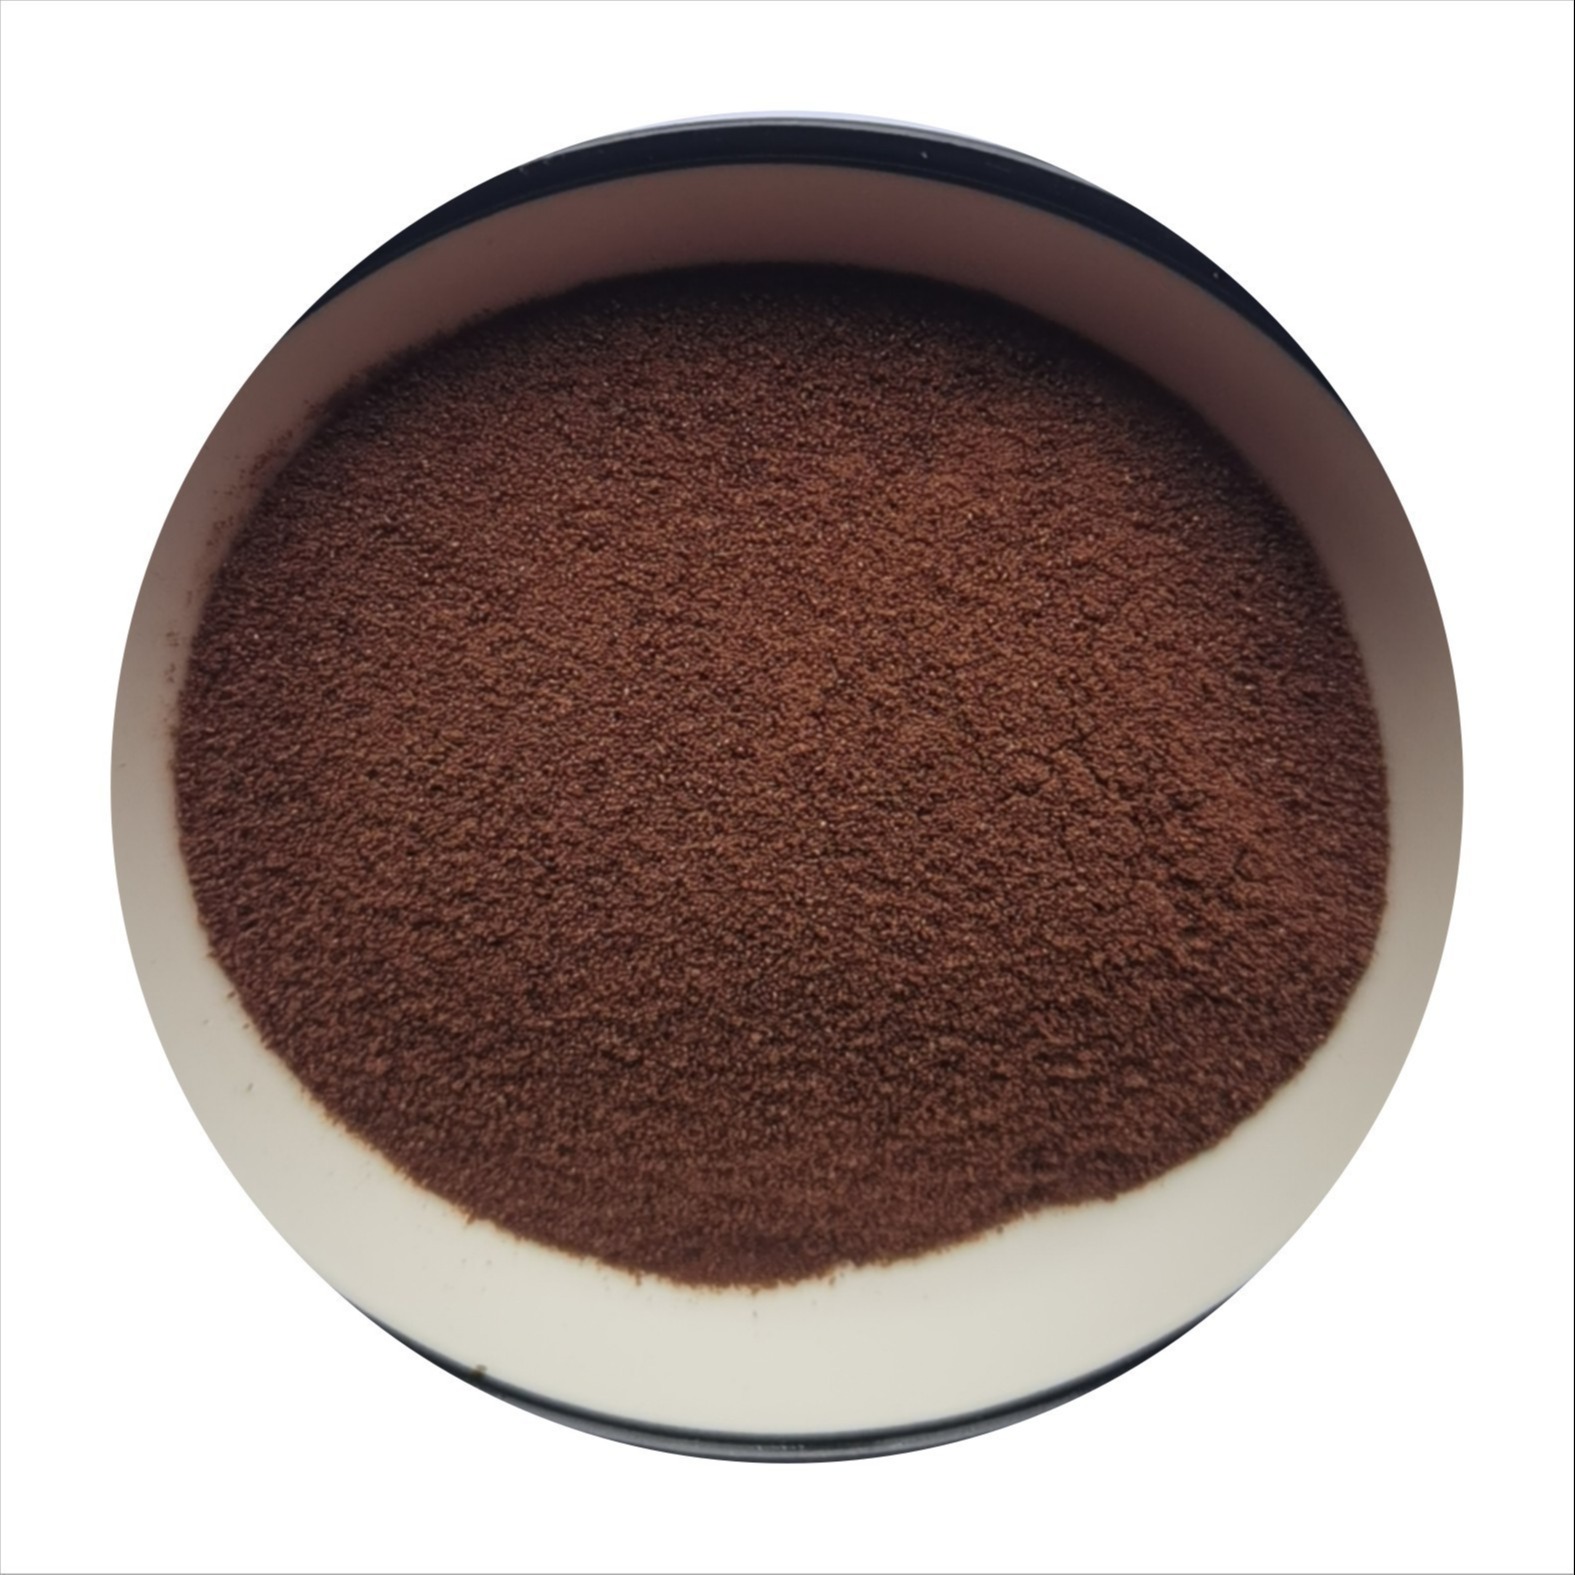 速溶咖啡粉 进口咖啡豆原料 烘焙原料 厂家供应